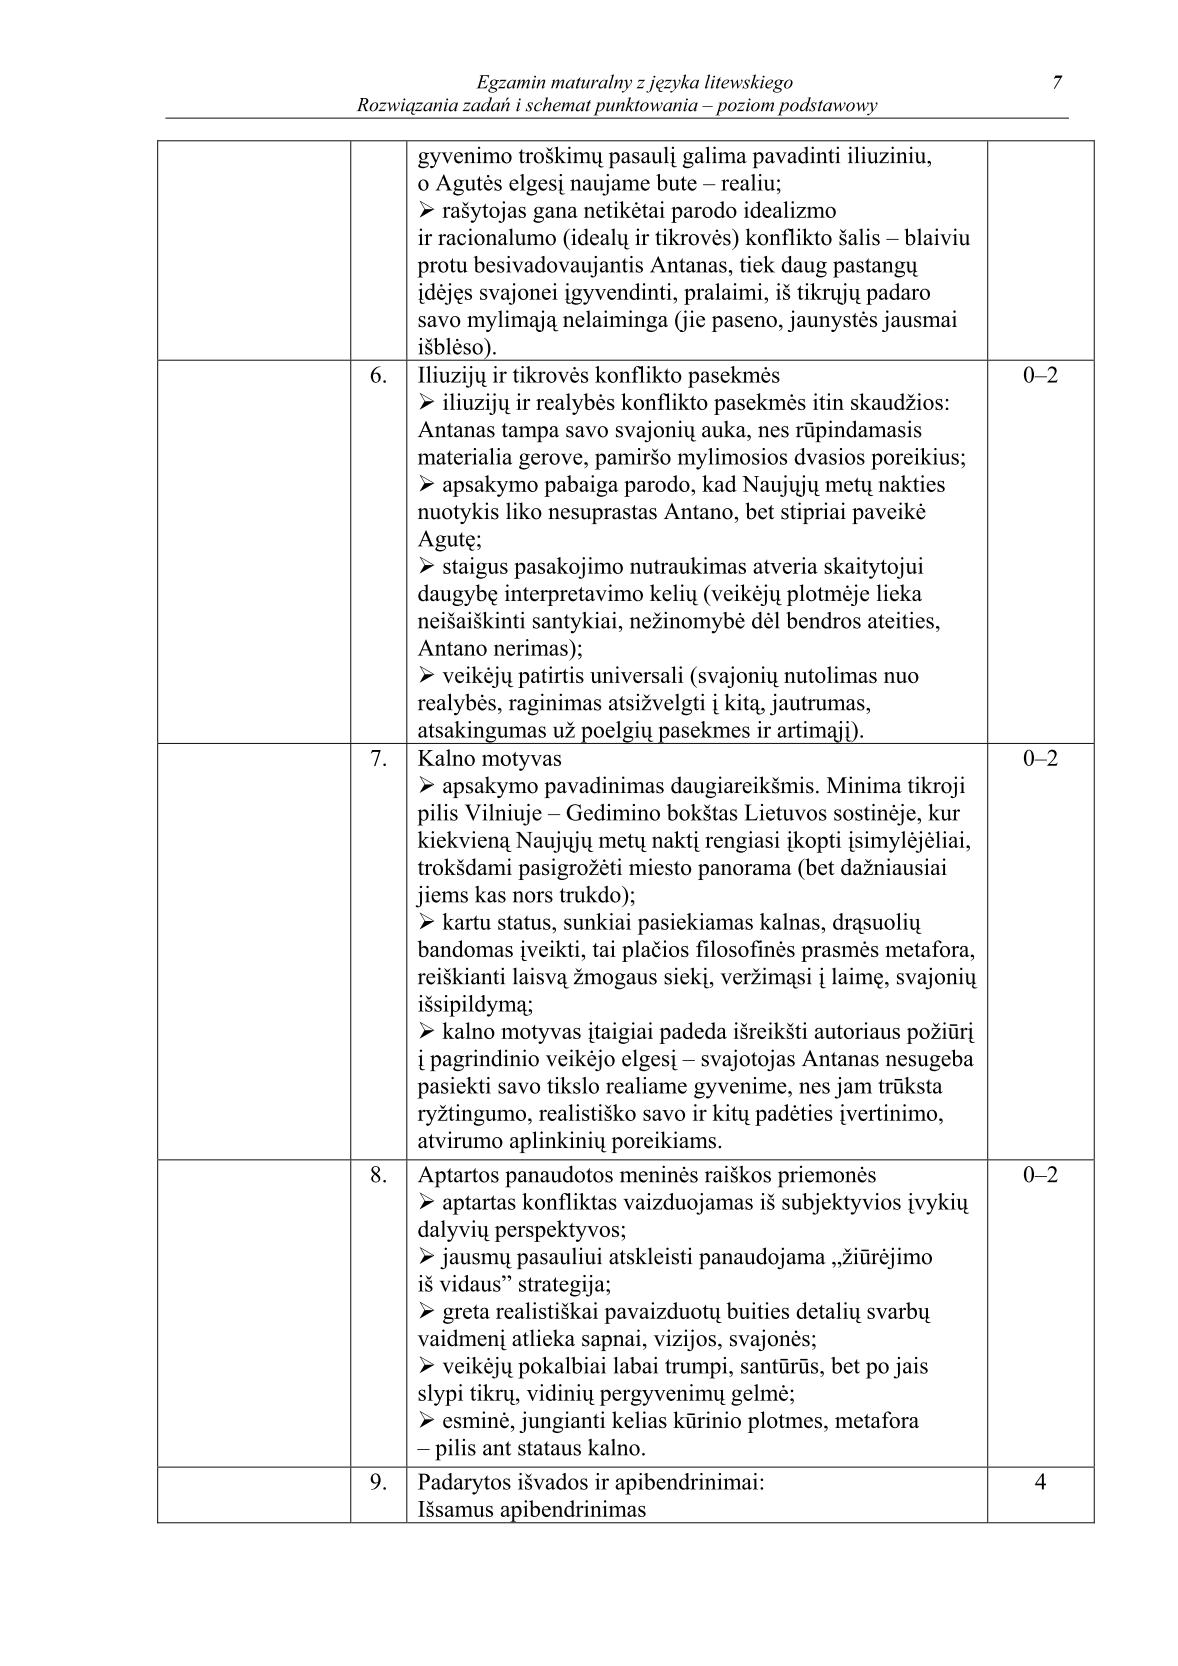 odpowiedzi-jezyk-litewski-poziom-podstawowy-matura-2014-str.7